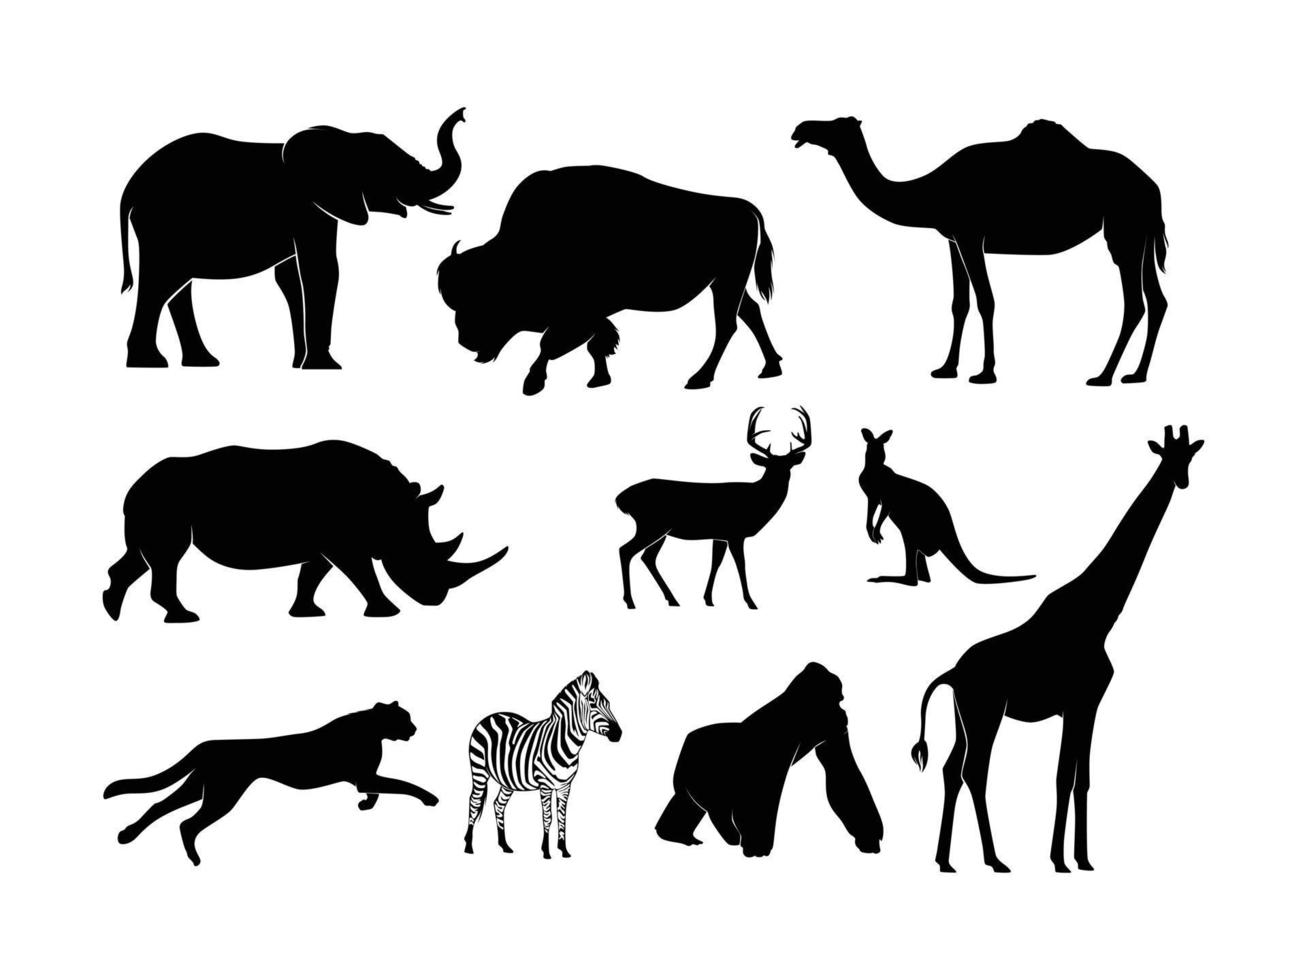 uppsättning av djur husdjur silhuett isolerat på en vit bakgrund - vektor illustration pt 2